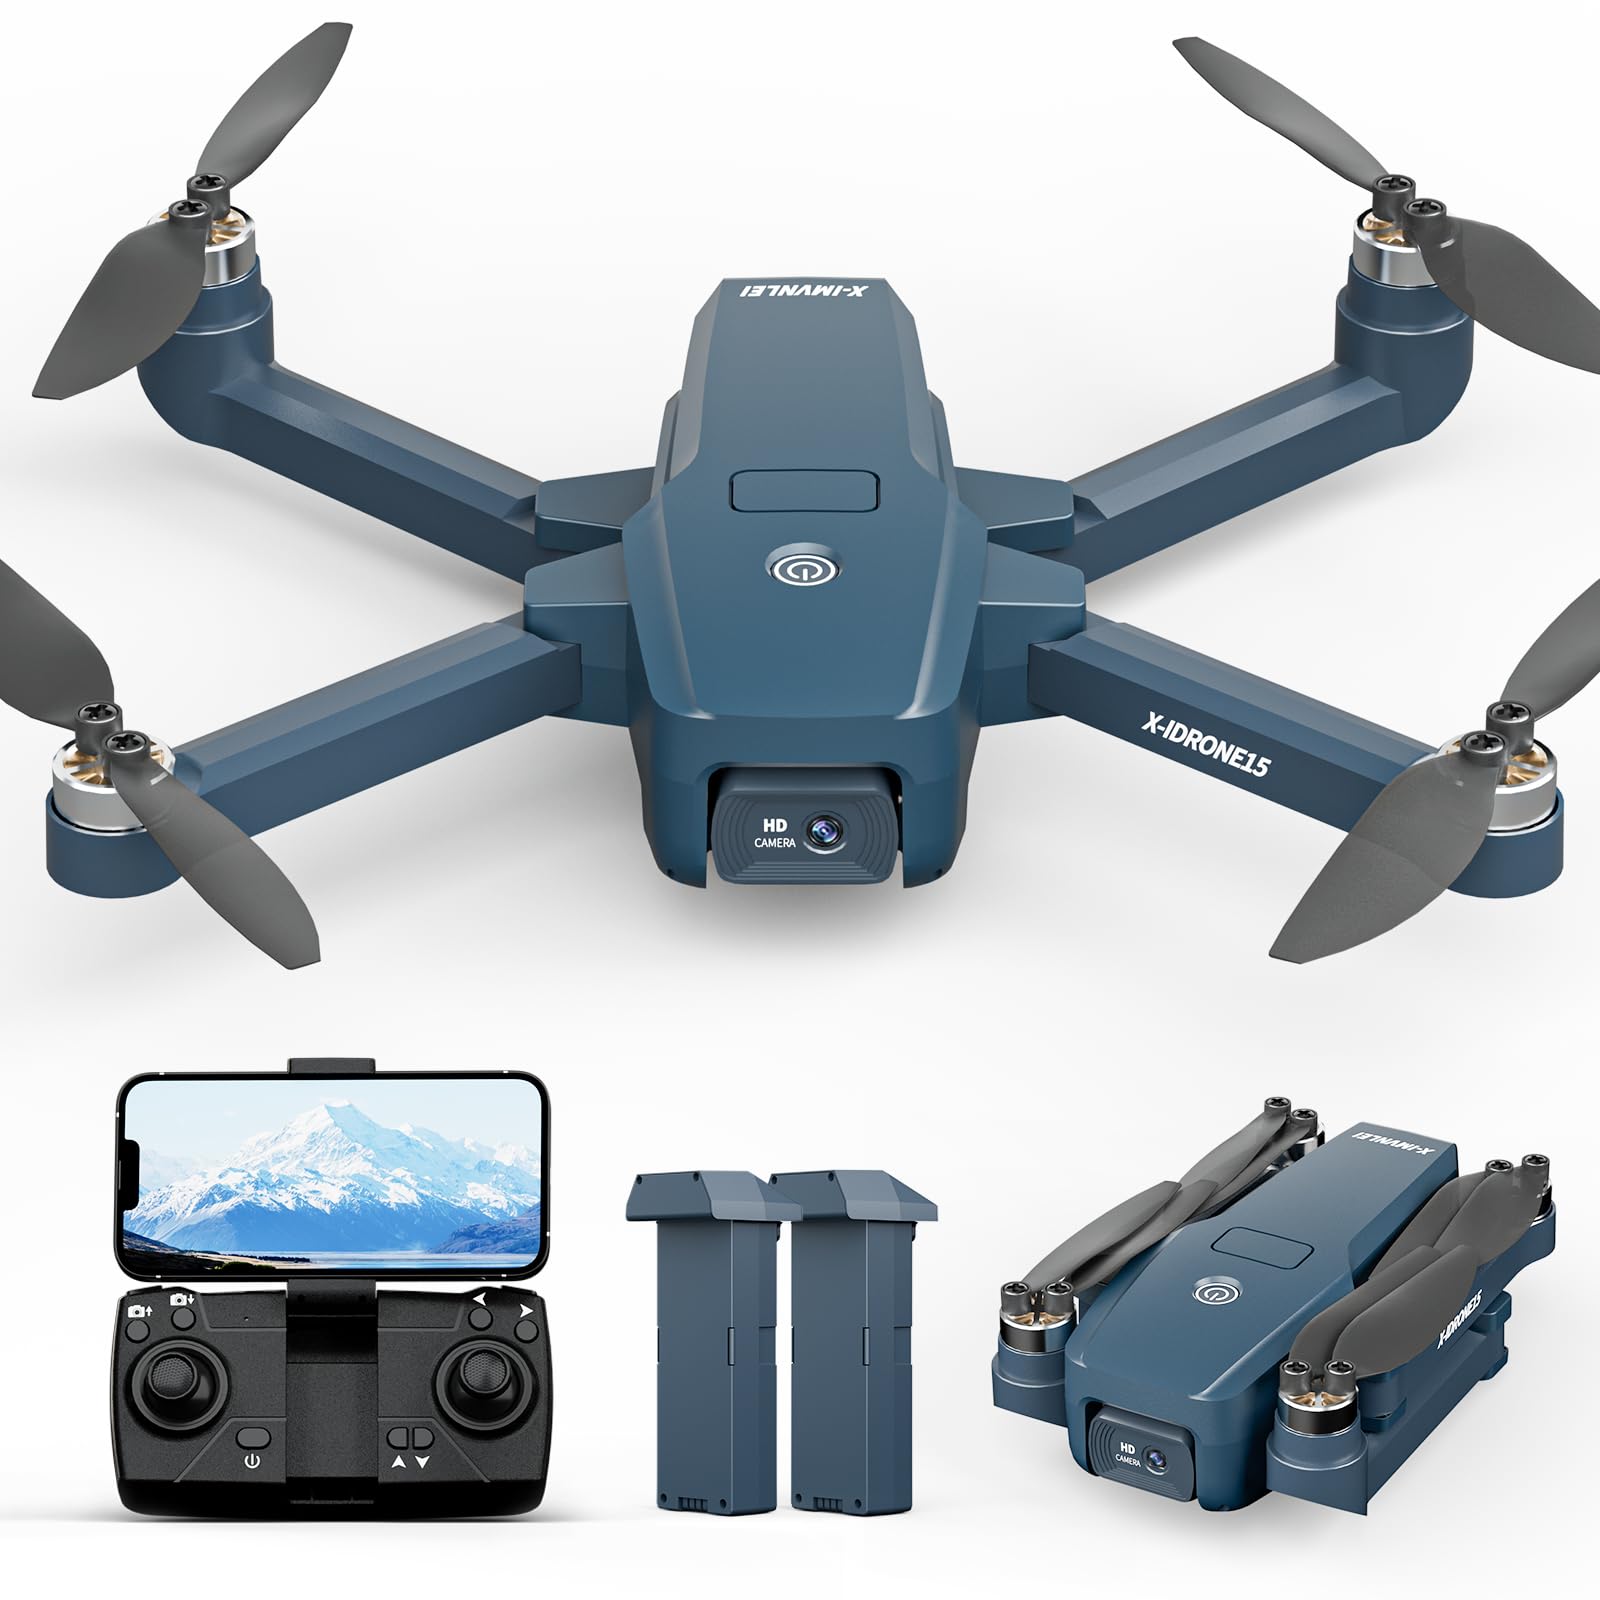 Bürstenlose Motor Drohne 4K Kameras 40km/h Max Windbeständig 4 Level drohnen 5GHz WIFI FPV Drohnen mit 2 Kameras Drohen Faltbar Quadcopter Höhenhaltung 2 Akkus für Anfänger von FAKJANK